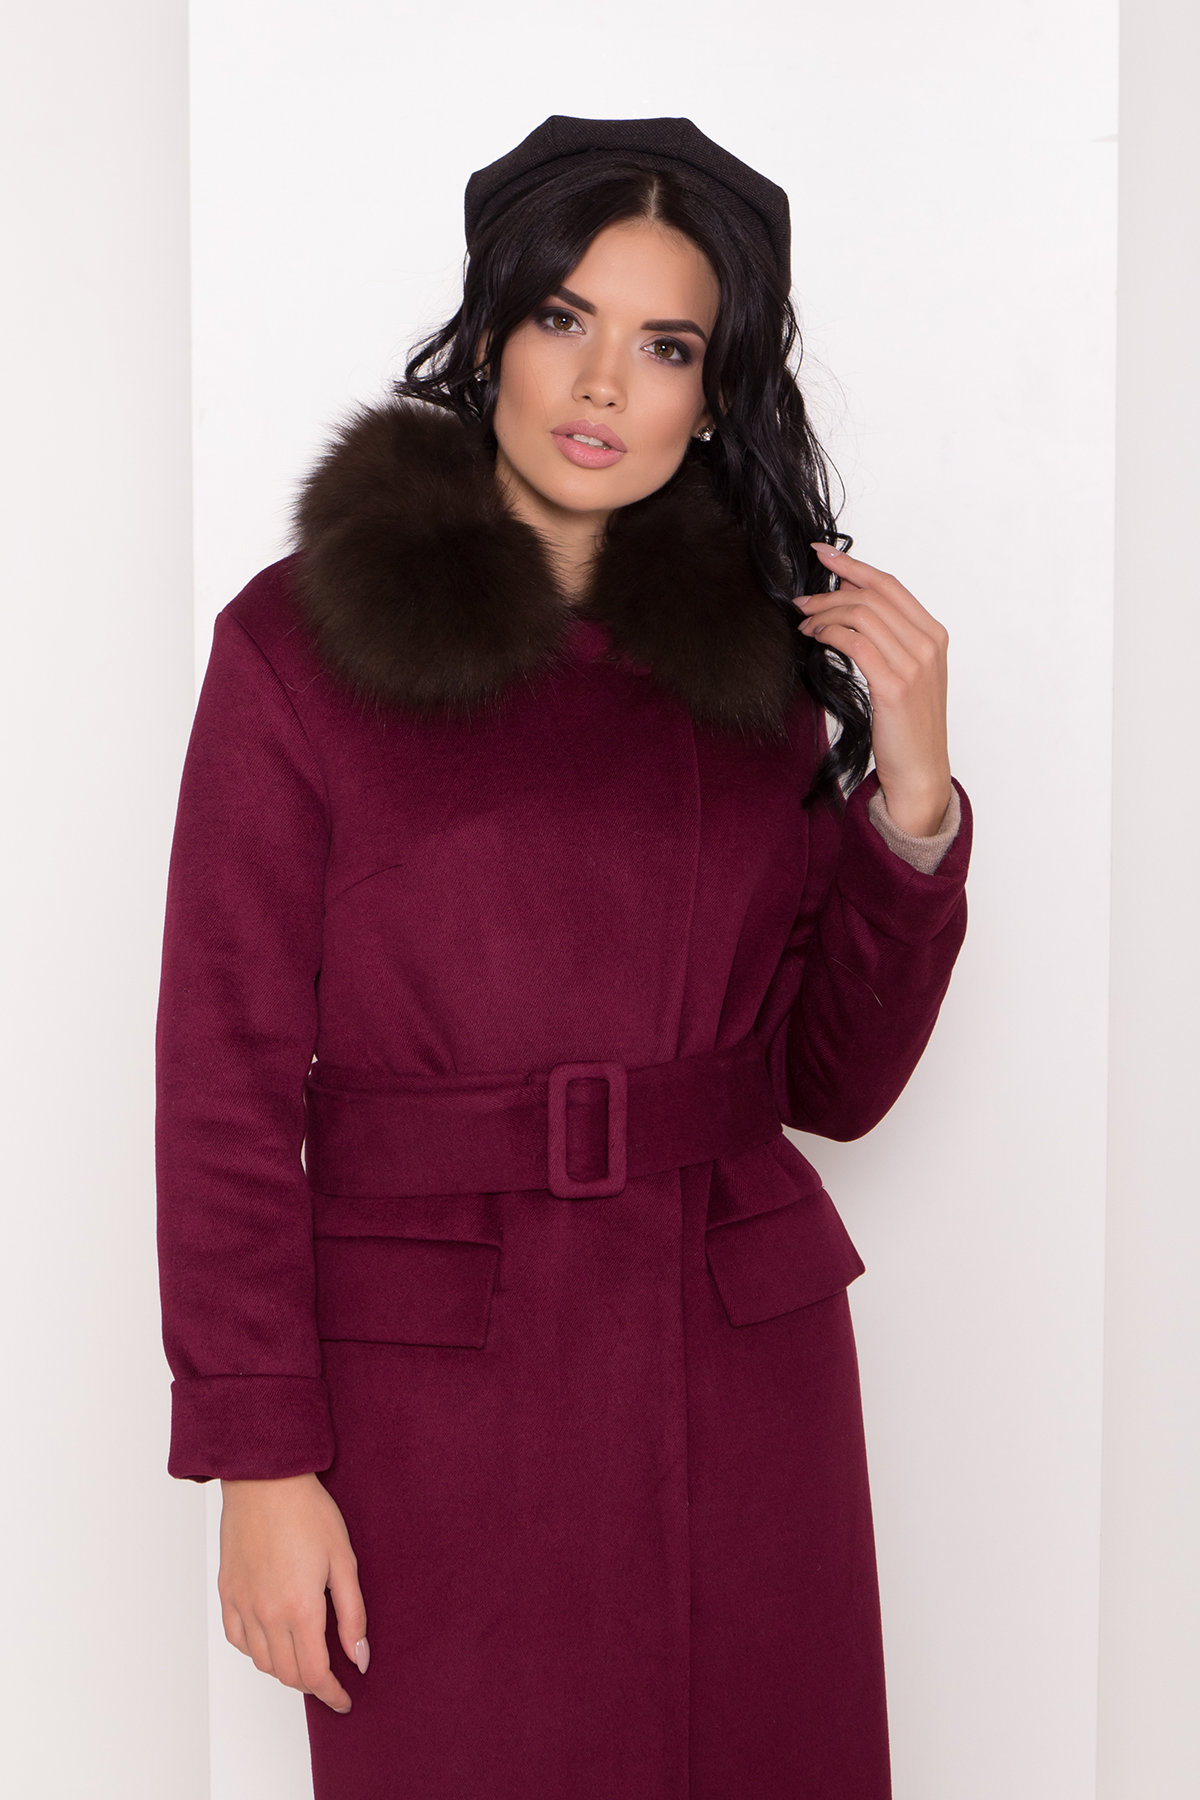 Зимнее пальто цвета марсала Моле 8175 АРТ. 44171 Цвет: Марсала 2 - фото 5, интернет магазин tm-modus.ru